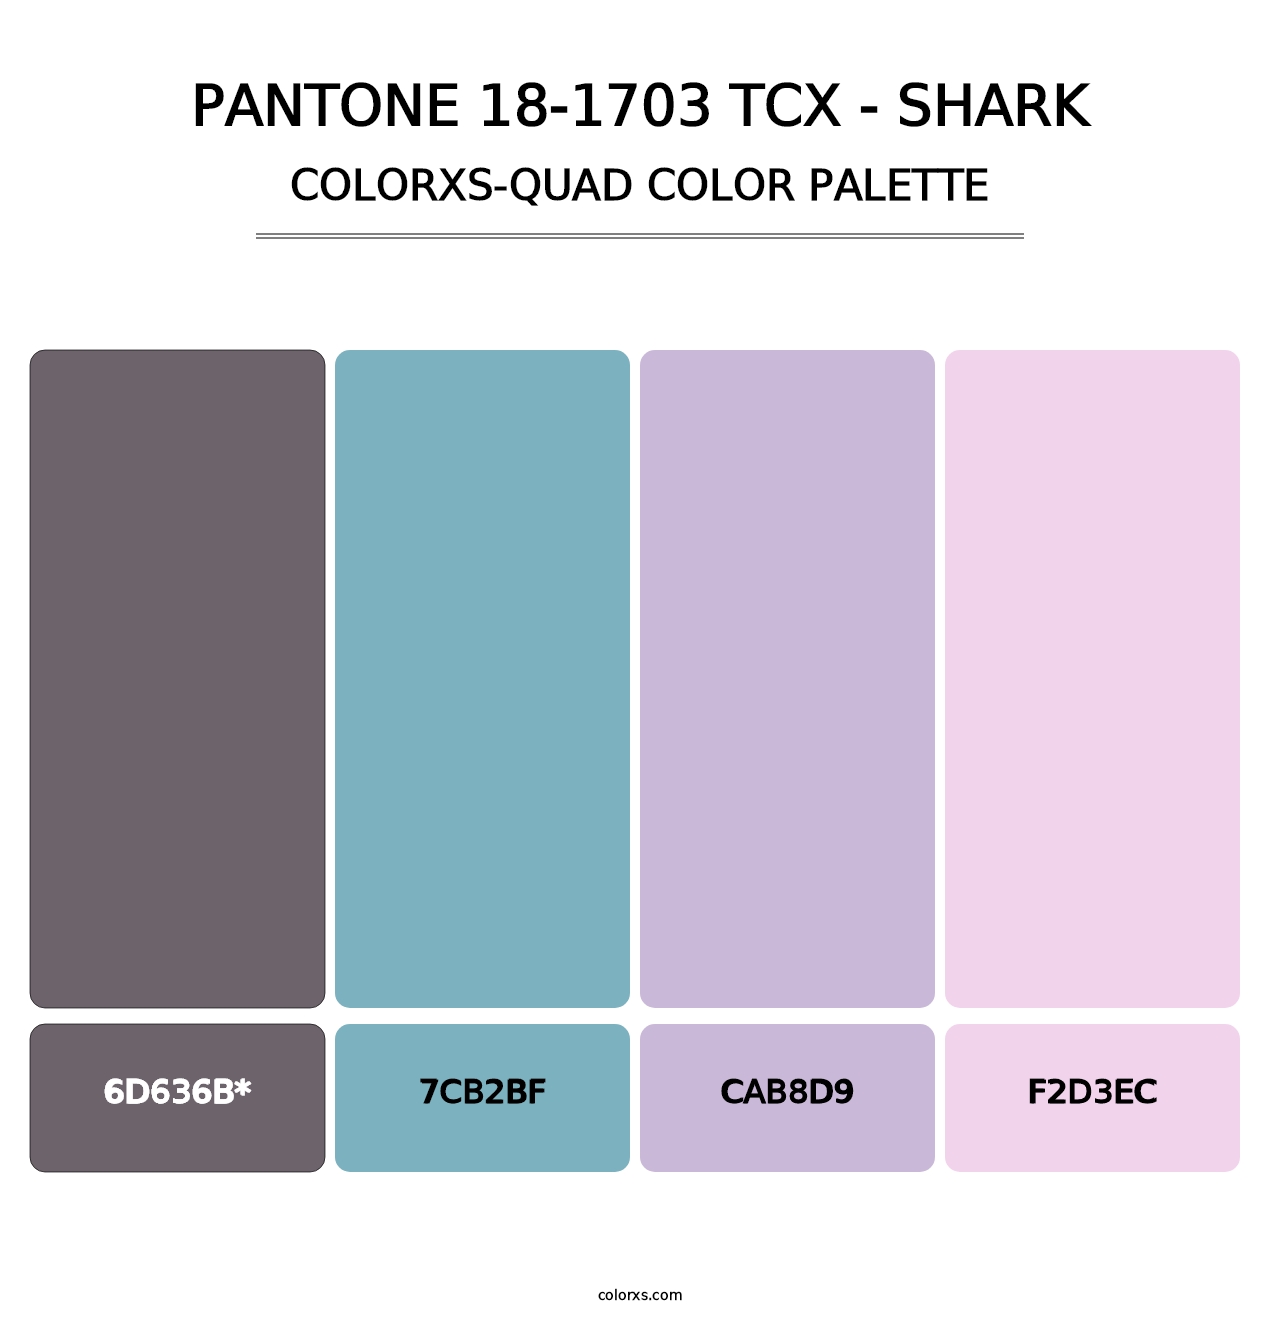 PANTONE 18-1703 TCX - Shark - Colorxs Quad Palette